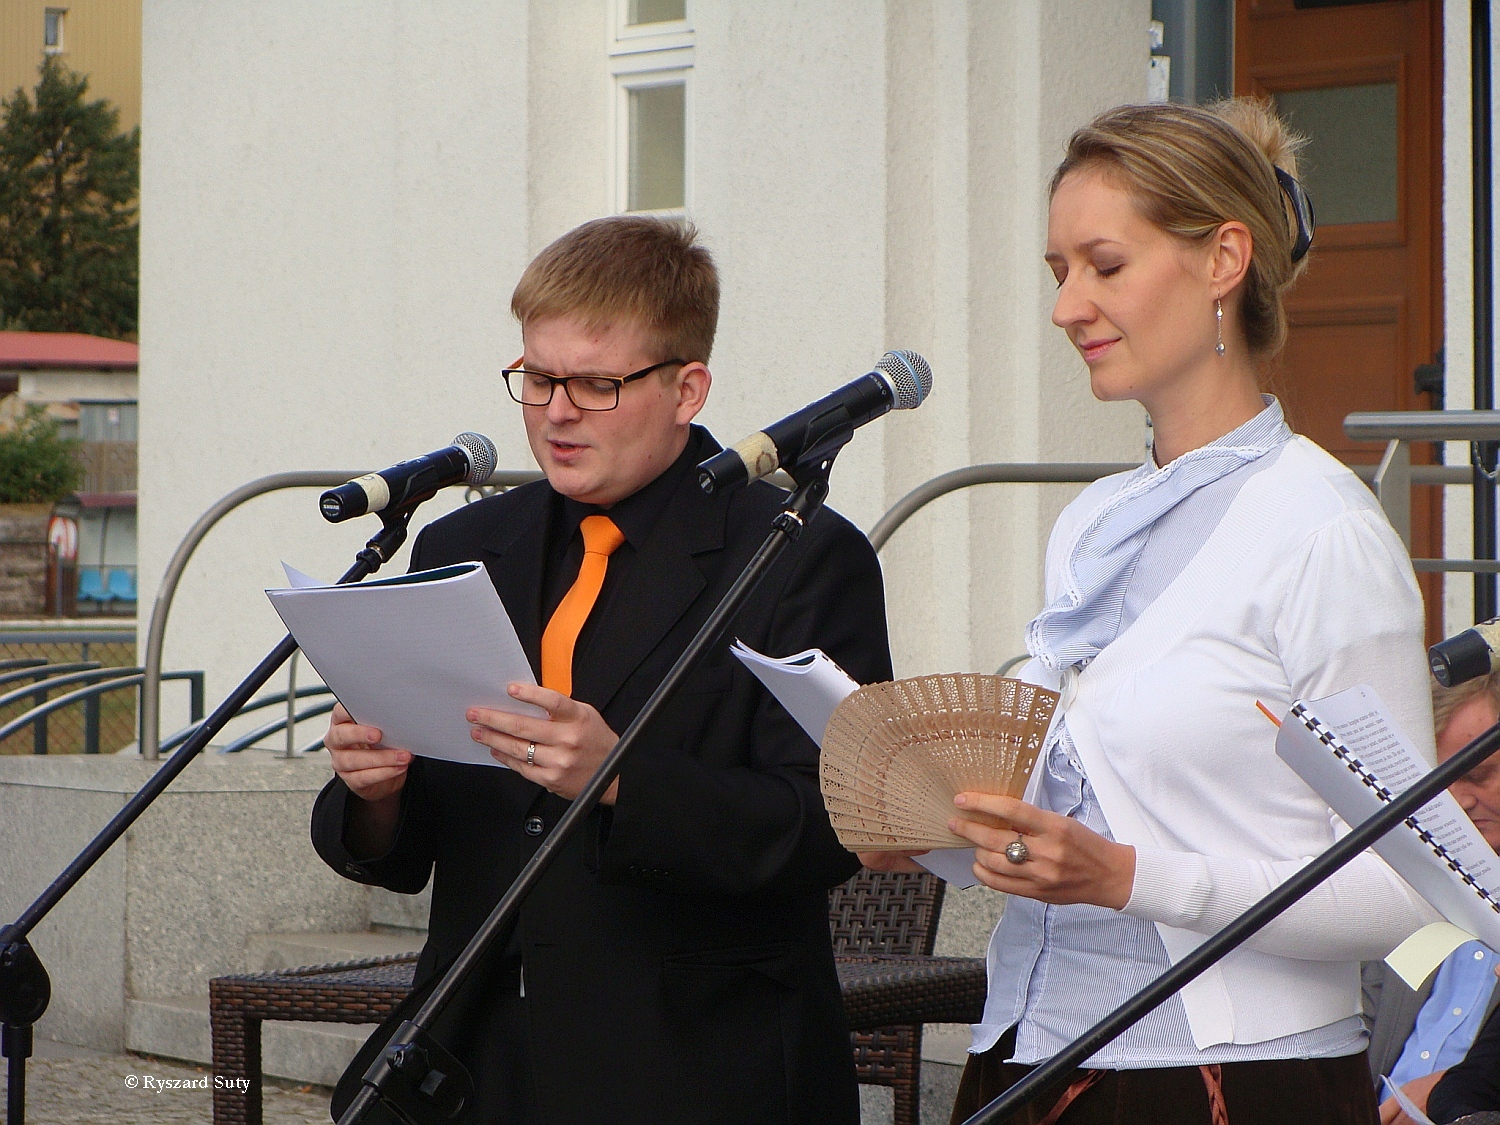 Monolog Izabeli ckiej (Magdalena Staniszewska), obok narrator - Tomasz Kowalski